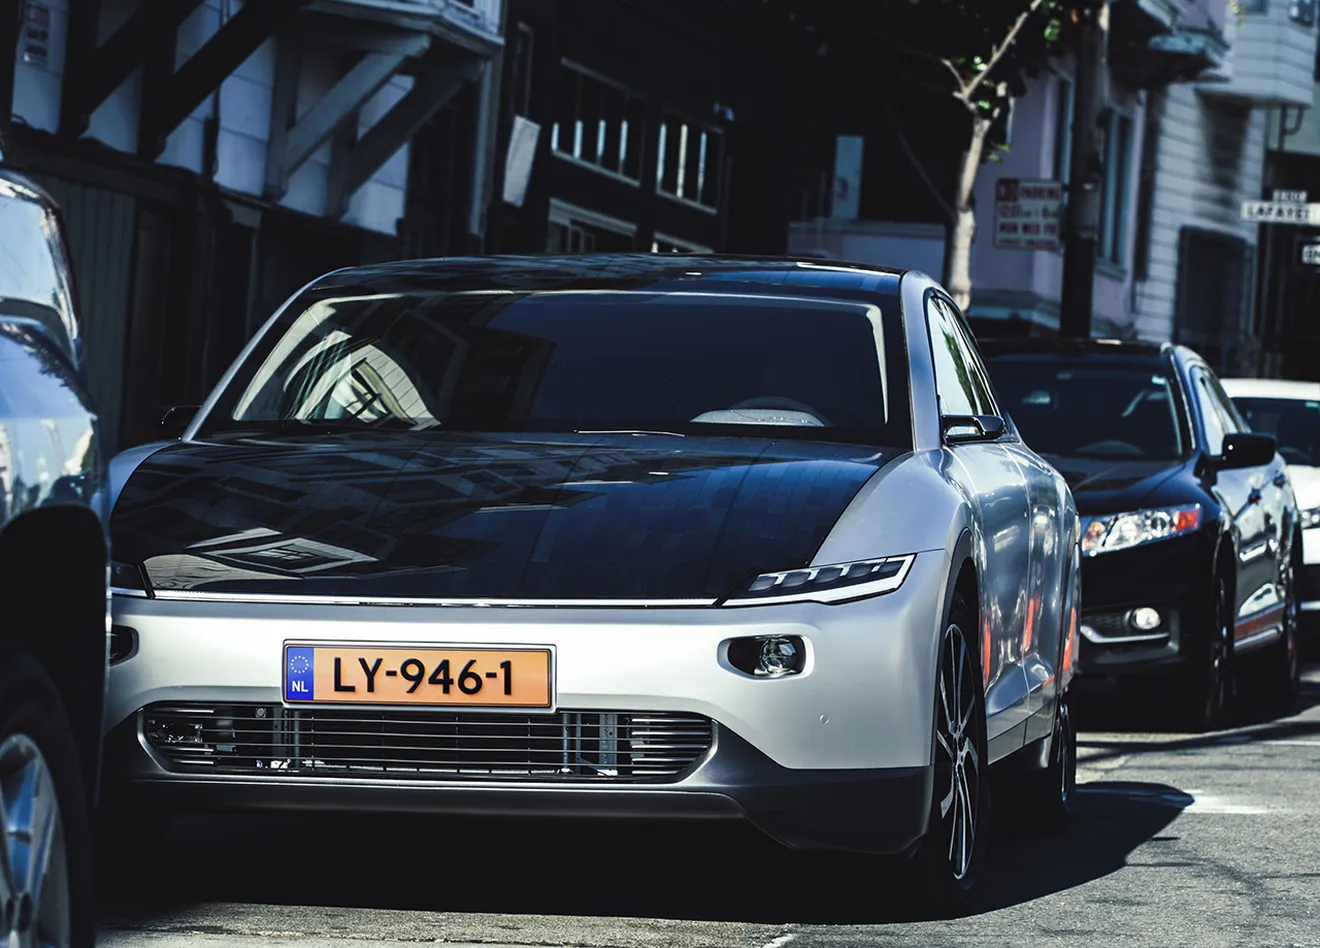 El Lightyear One, el exclusivo coche solar europeo, comienza su producción este verano